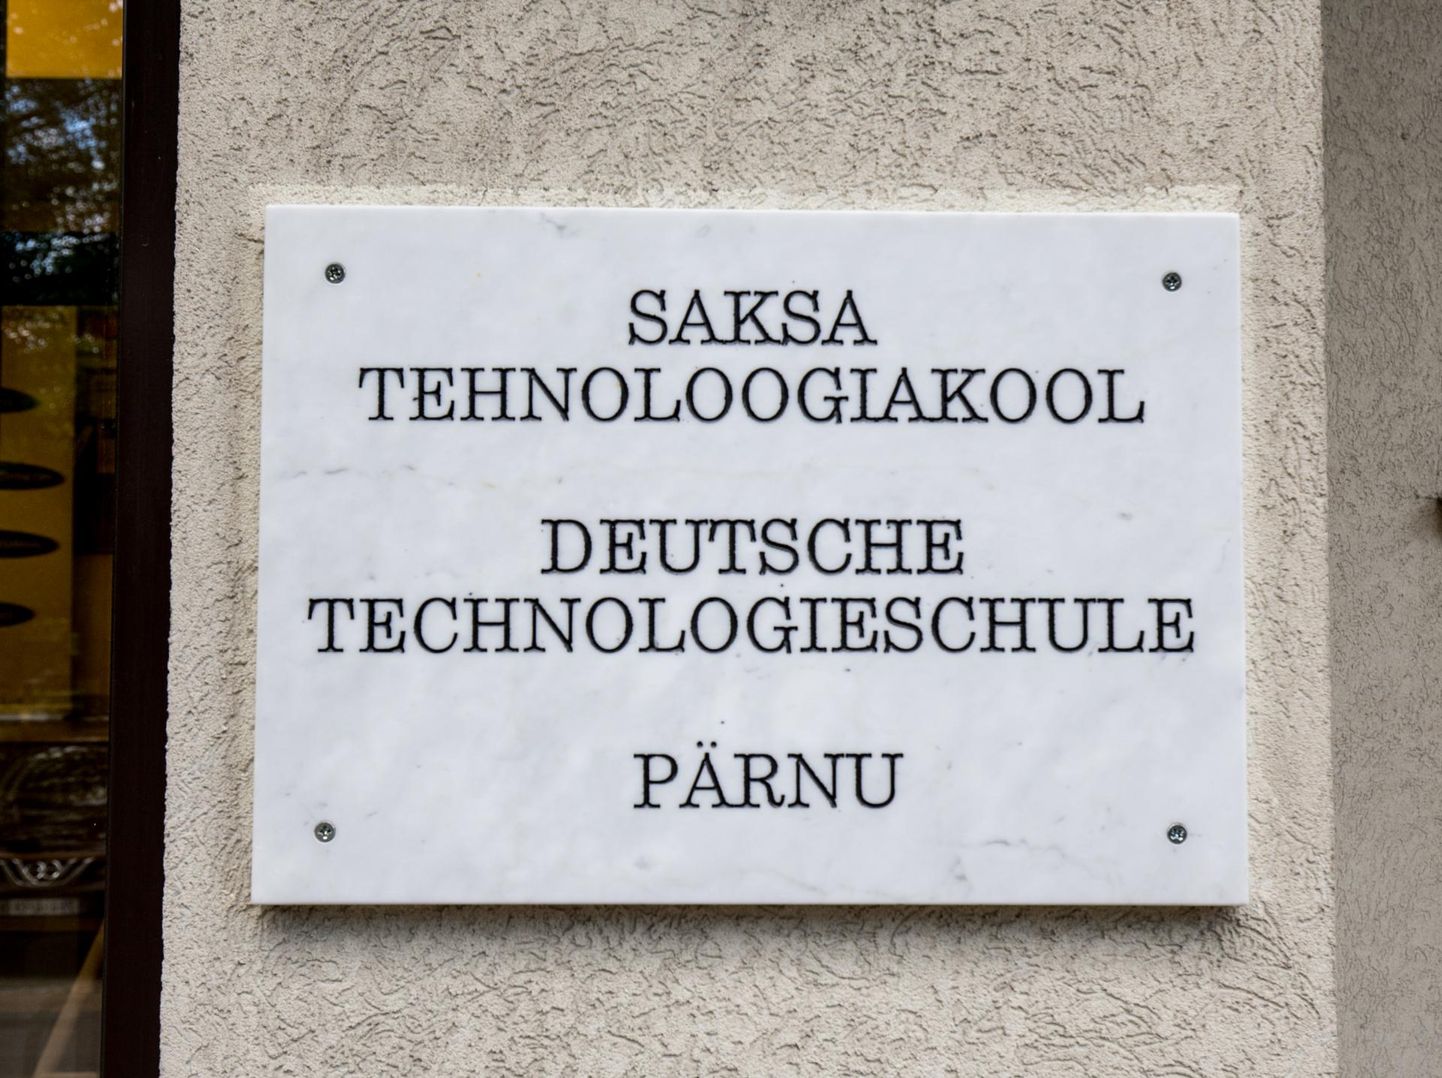 Saksa tehnoloogiakoolis on jaanuarist võimalik teadmisi omandada Saksa digikooli e-õppes.